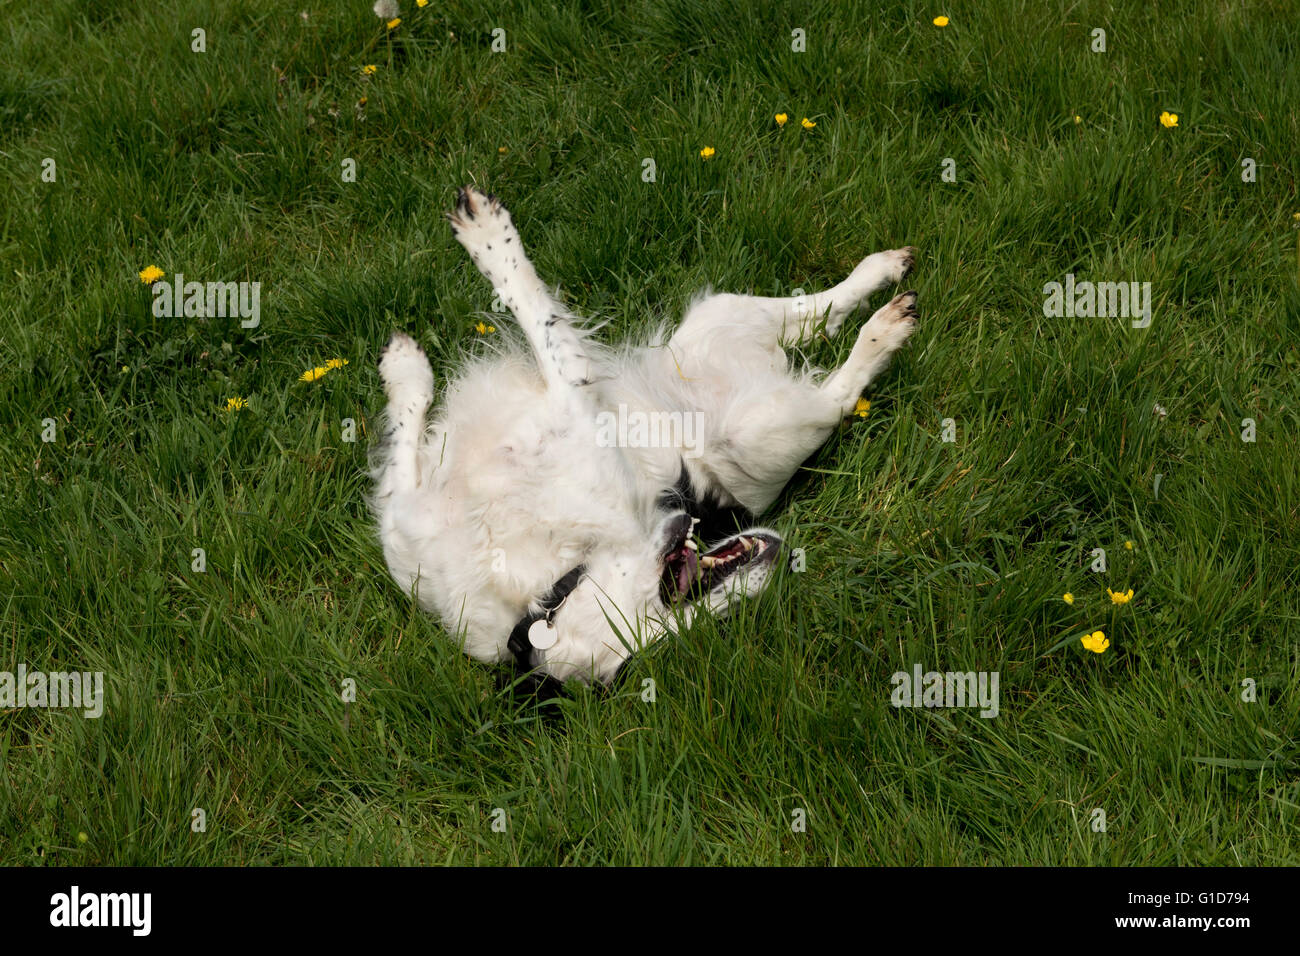 Un perro Cocker Spaniel rodando en algo apestoso en la hierba Foto de stock